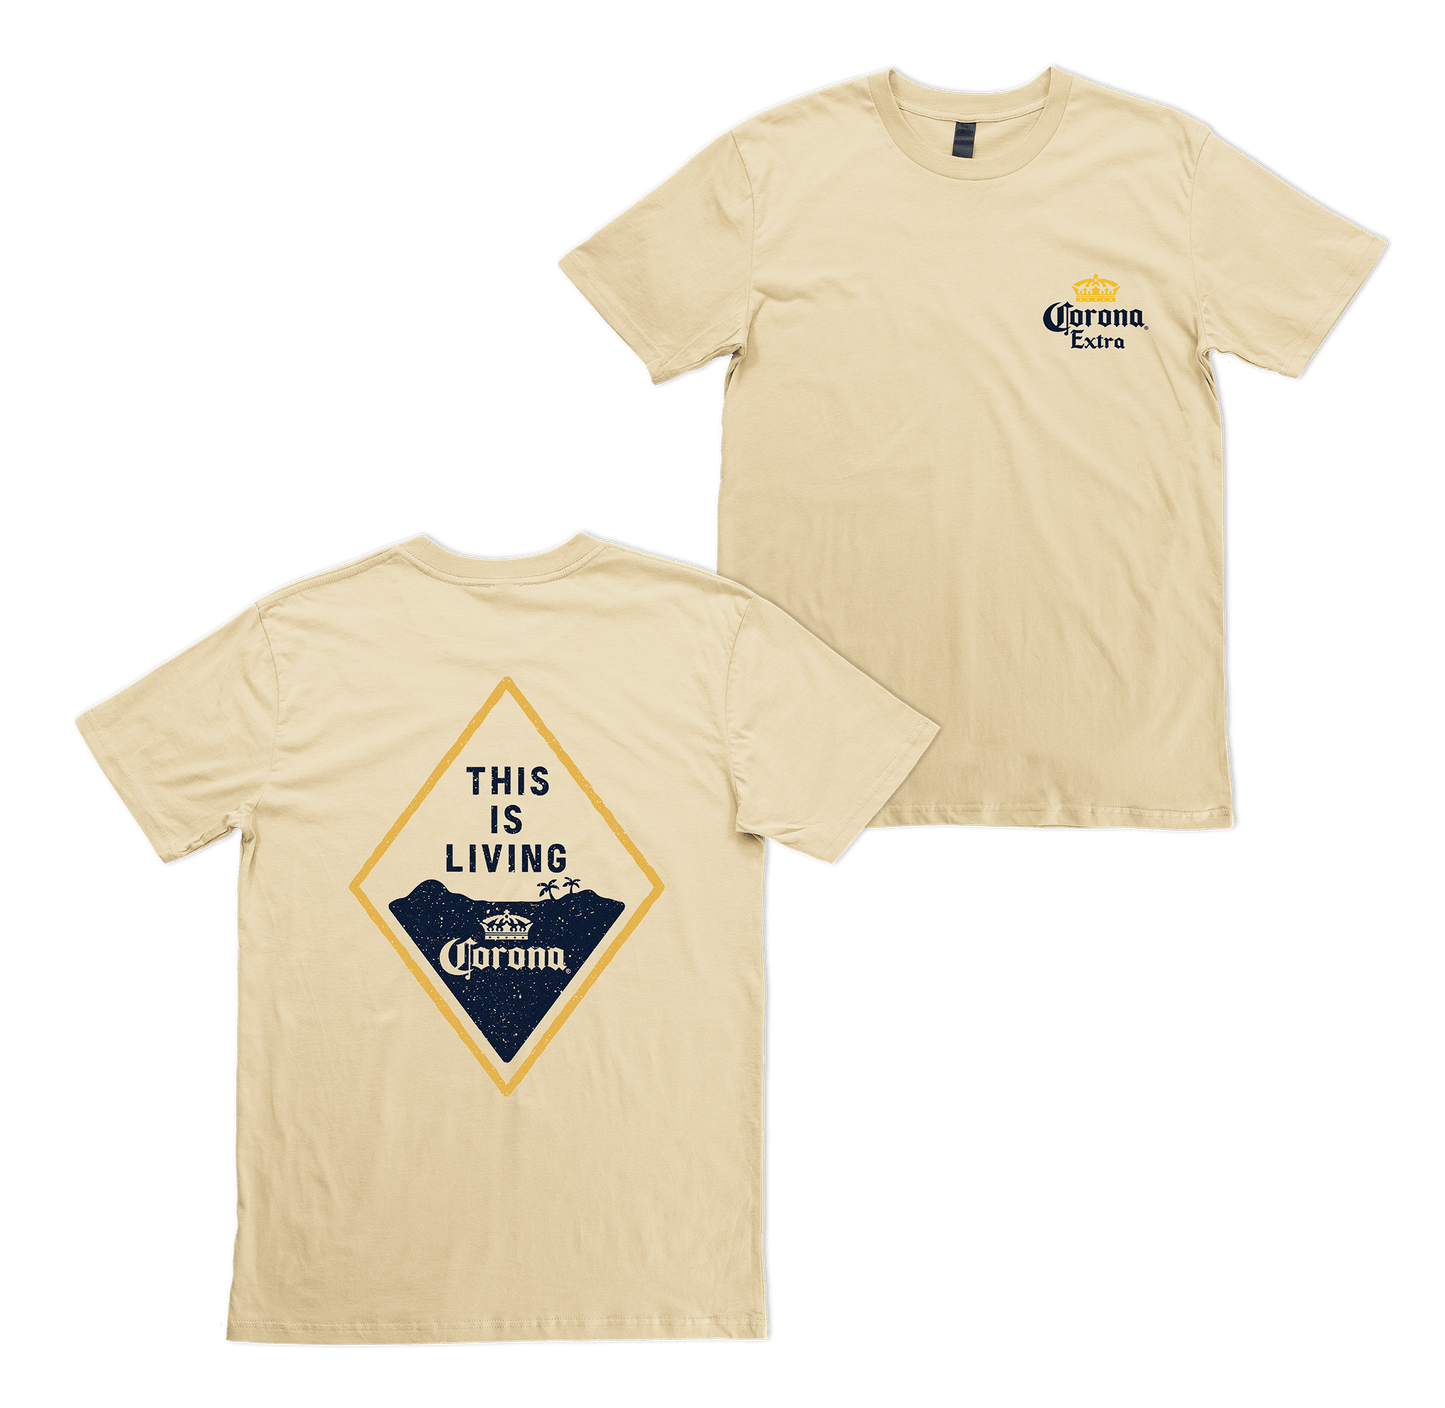 Living Tee T-Shirt Corona